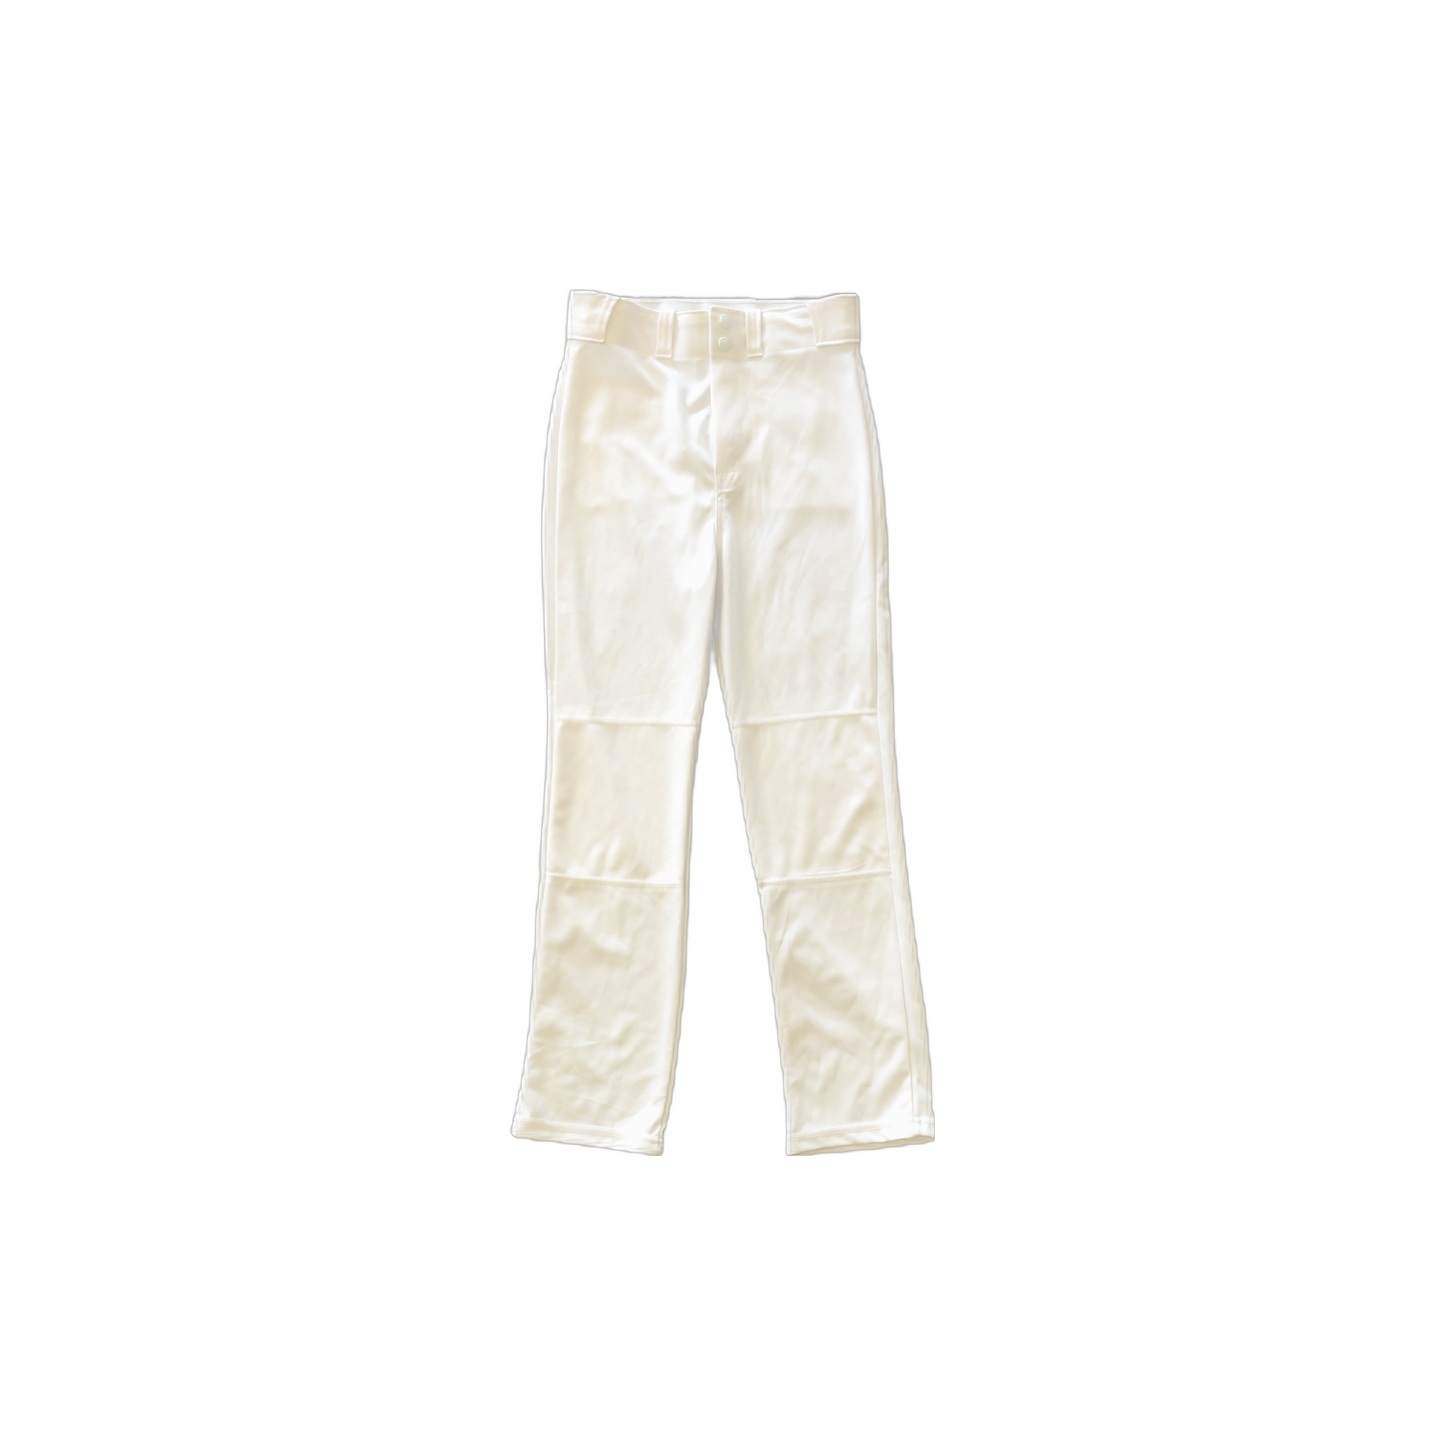 Rawlings Youth XL White Baseball Pants